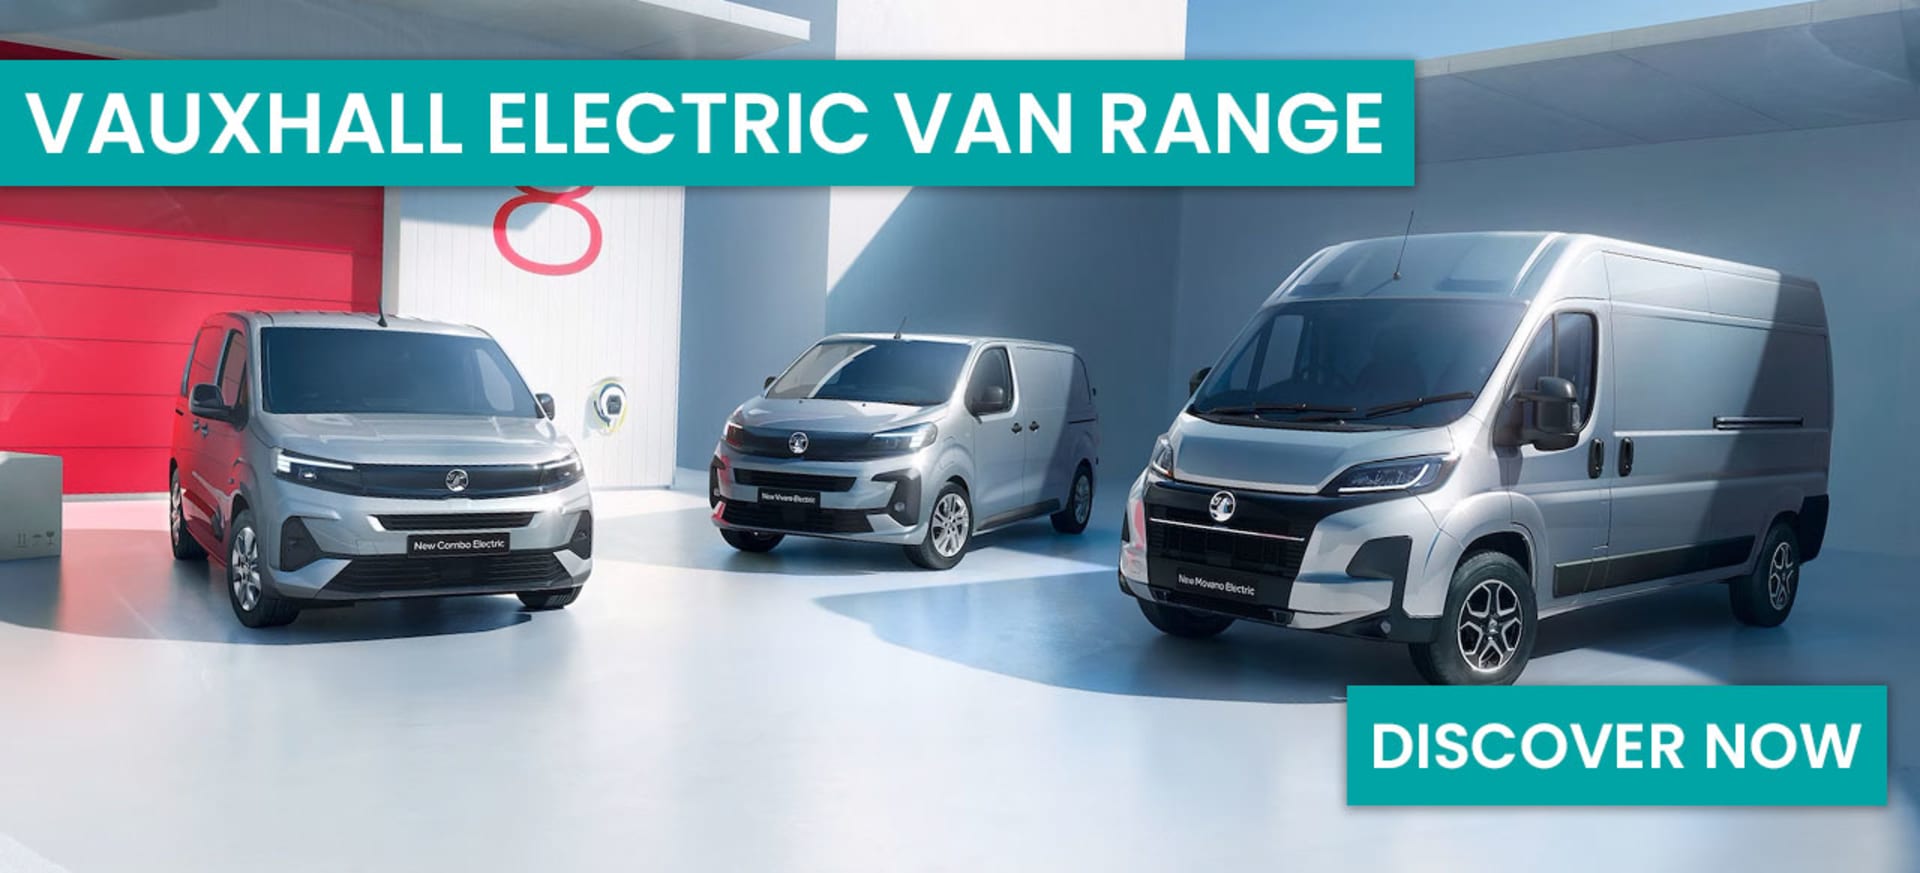 Vauxhall Electric Van Range